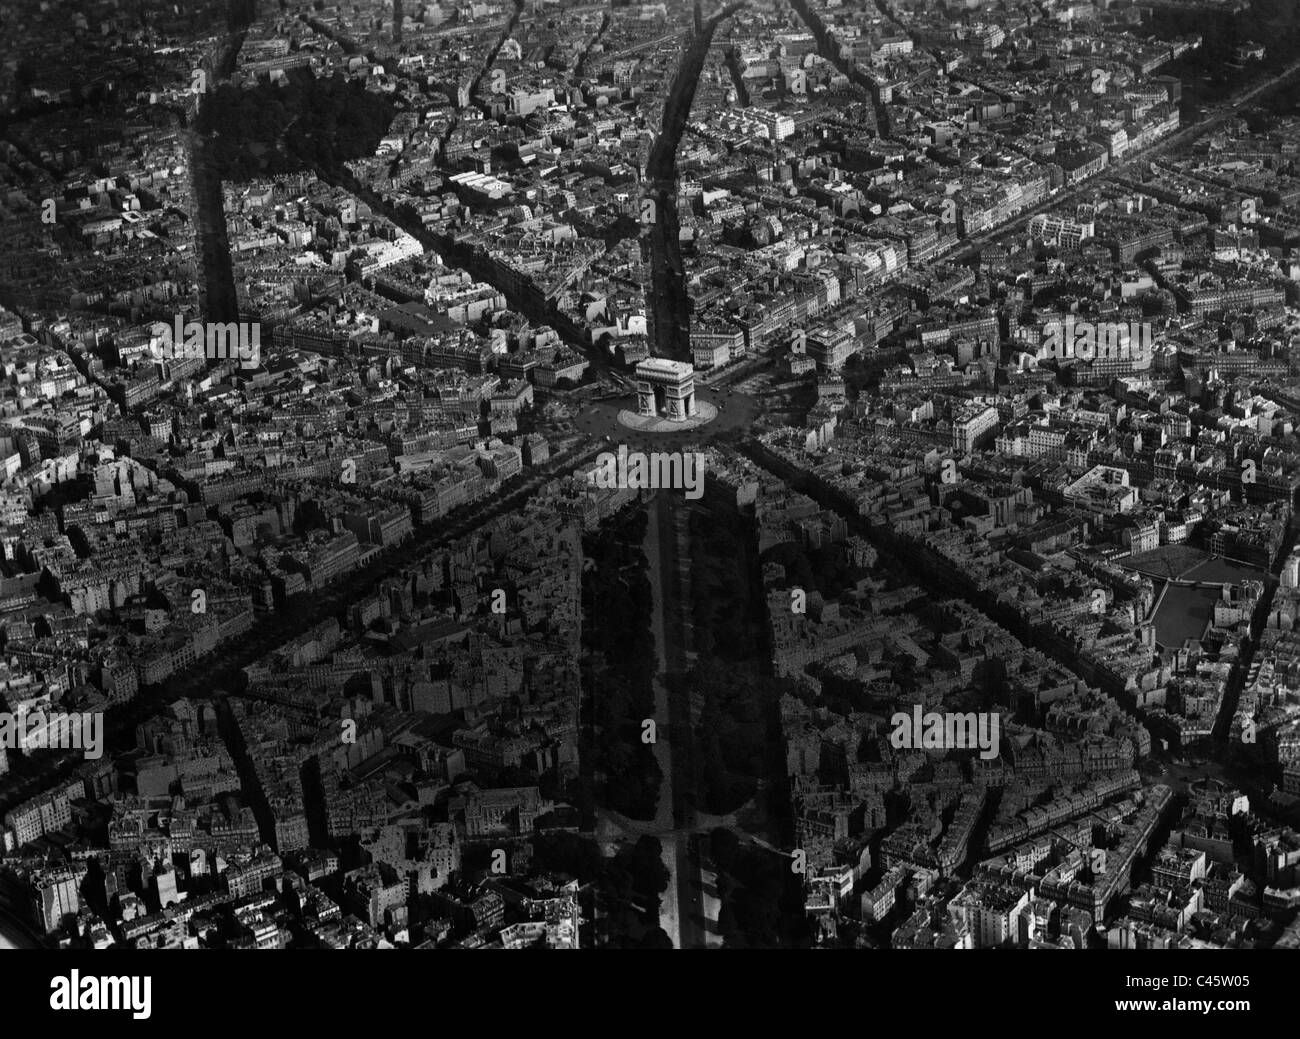 Vista aérea de la Place de l'Etoile con el arco triunfal de Arc de Triomphe de l'Etoile, 1914 Foto de stock